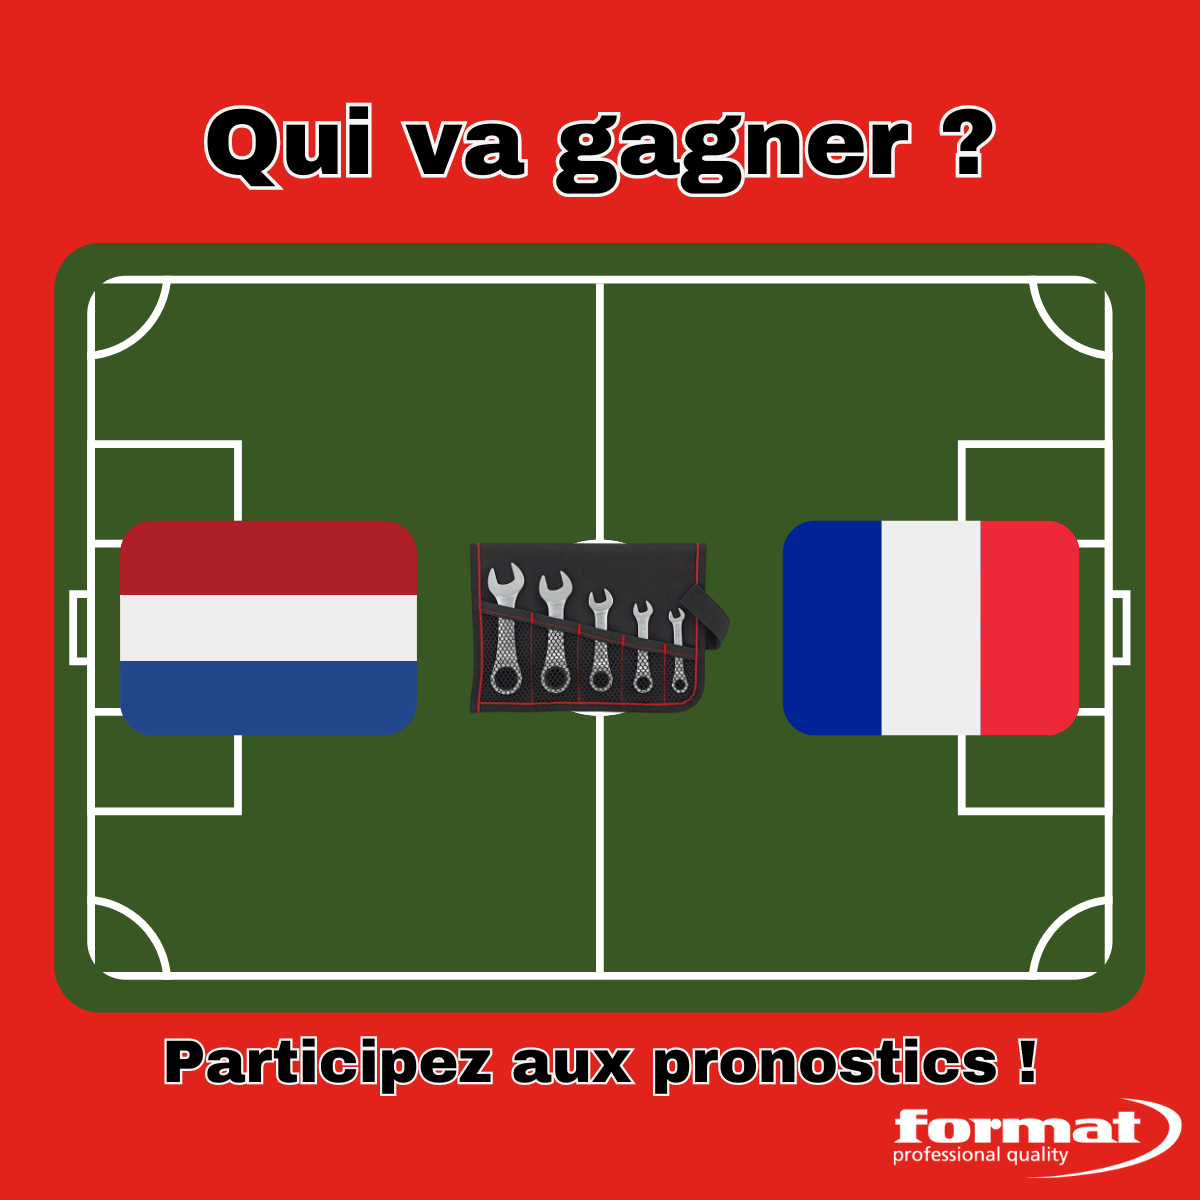 Qui gagnera le match Pays-Bas contre France ?